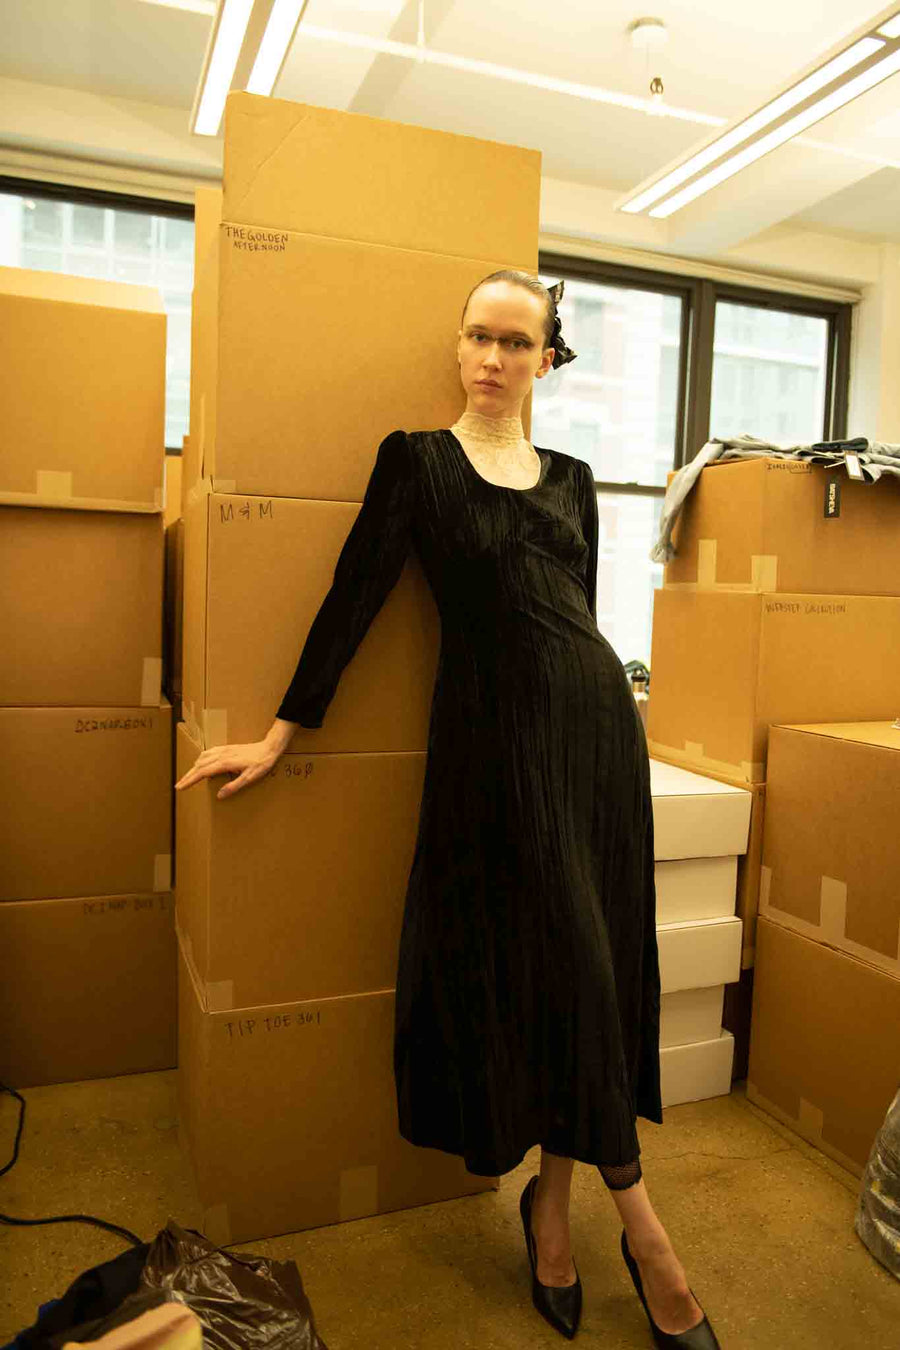 BATSHEVA - MaryJane Dress in Black Velvet